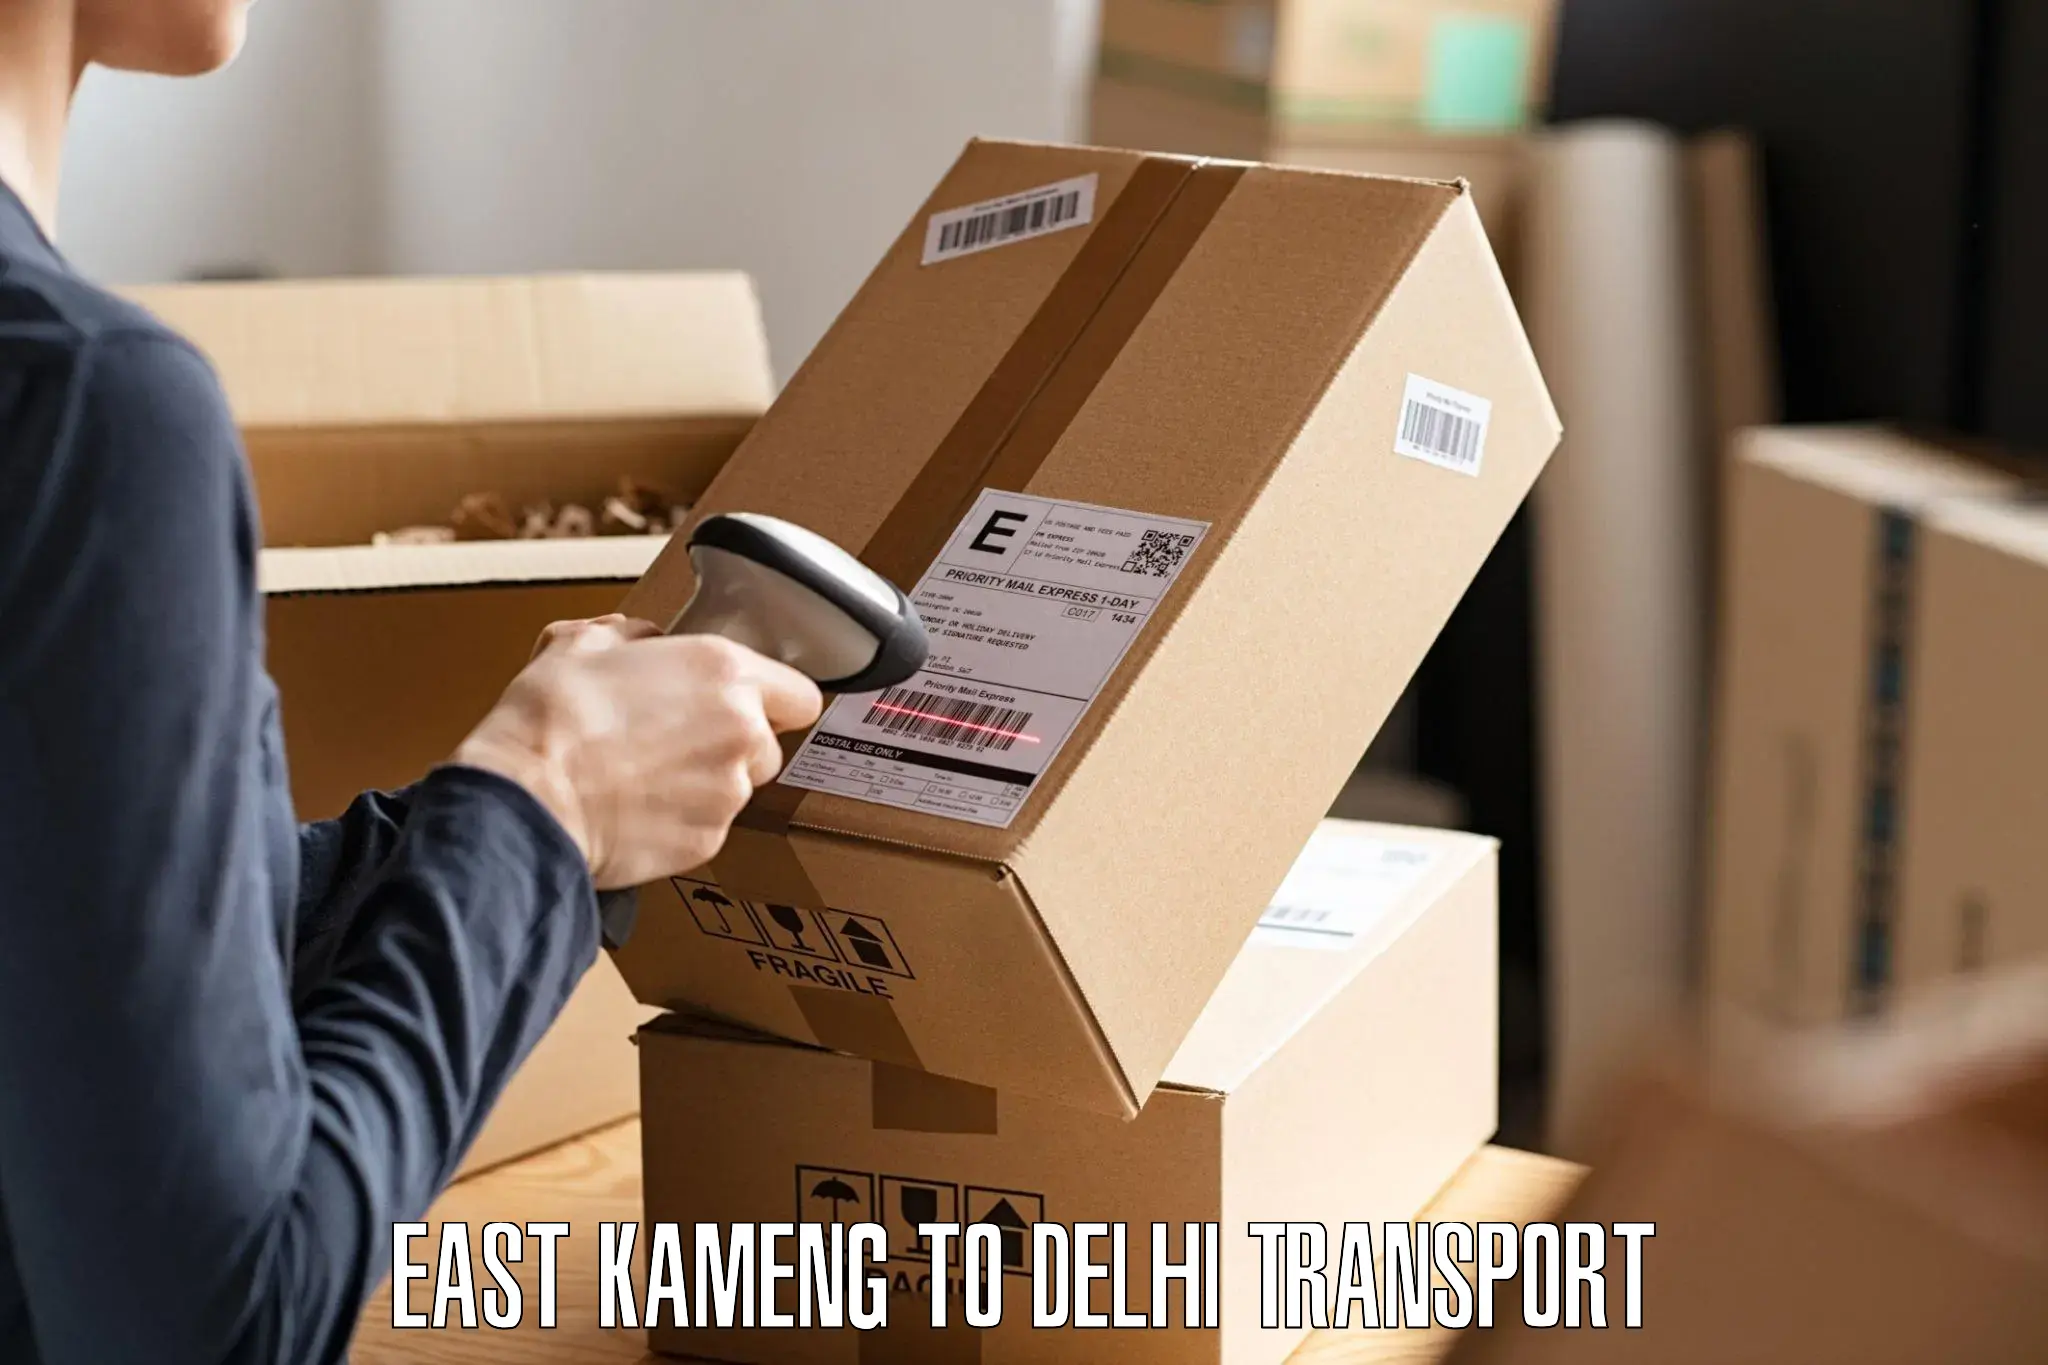 Pick up transport service East Kameng to Indraprastha